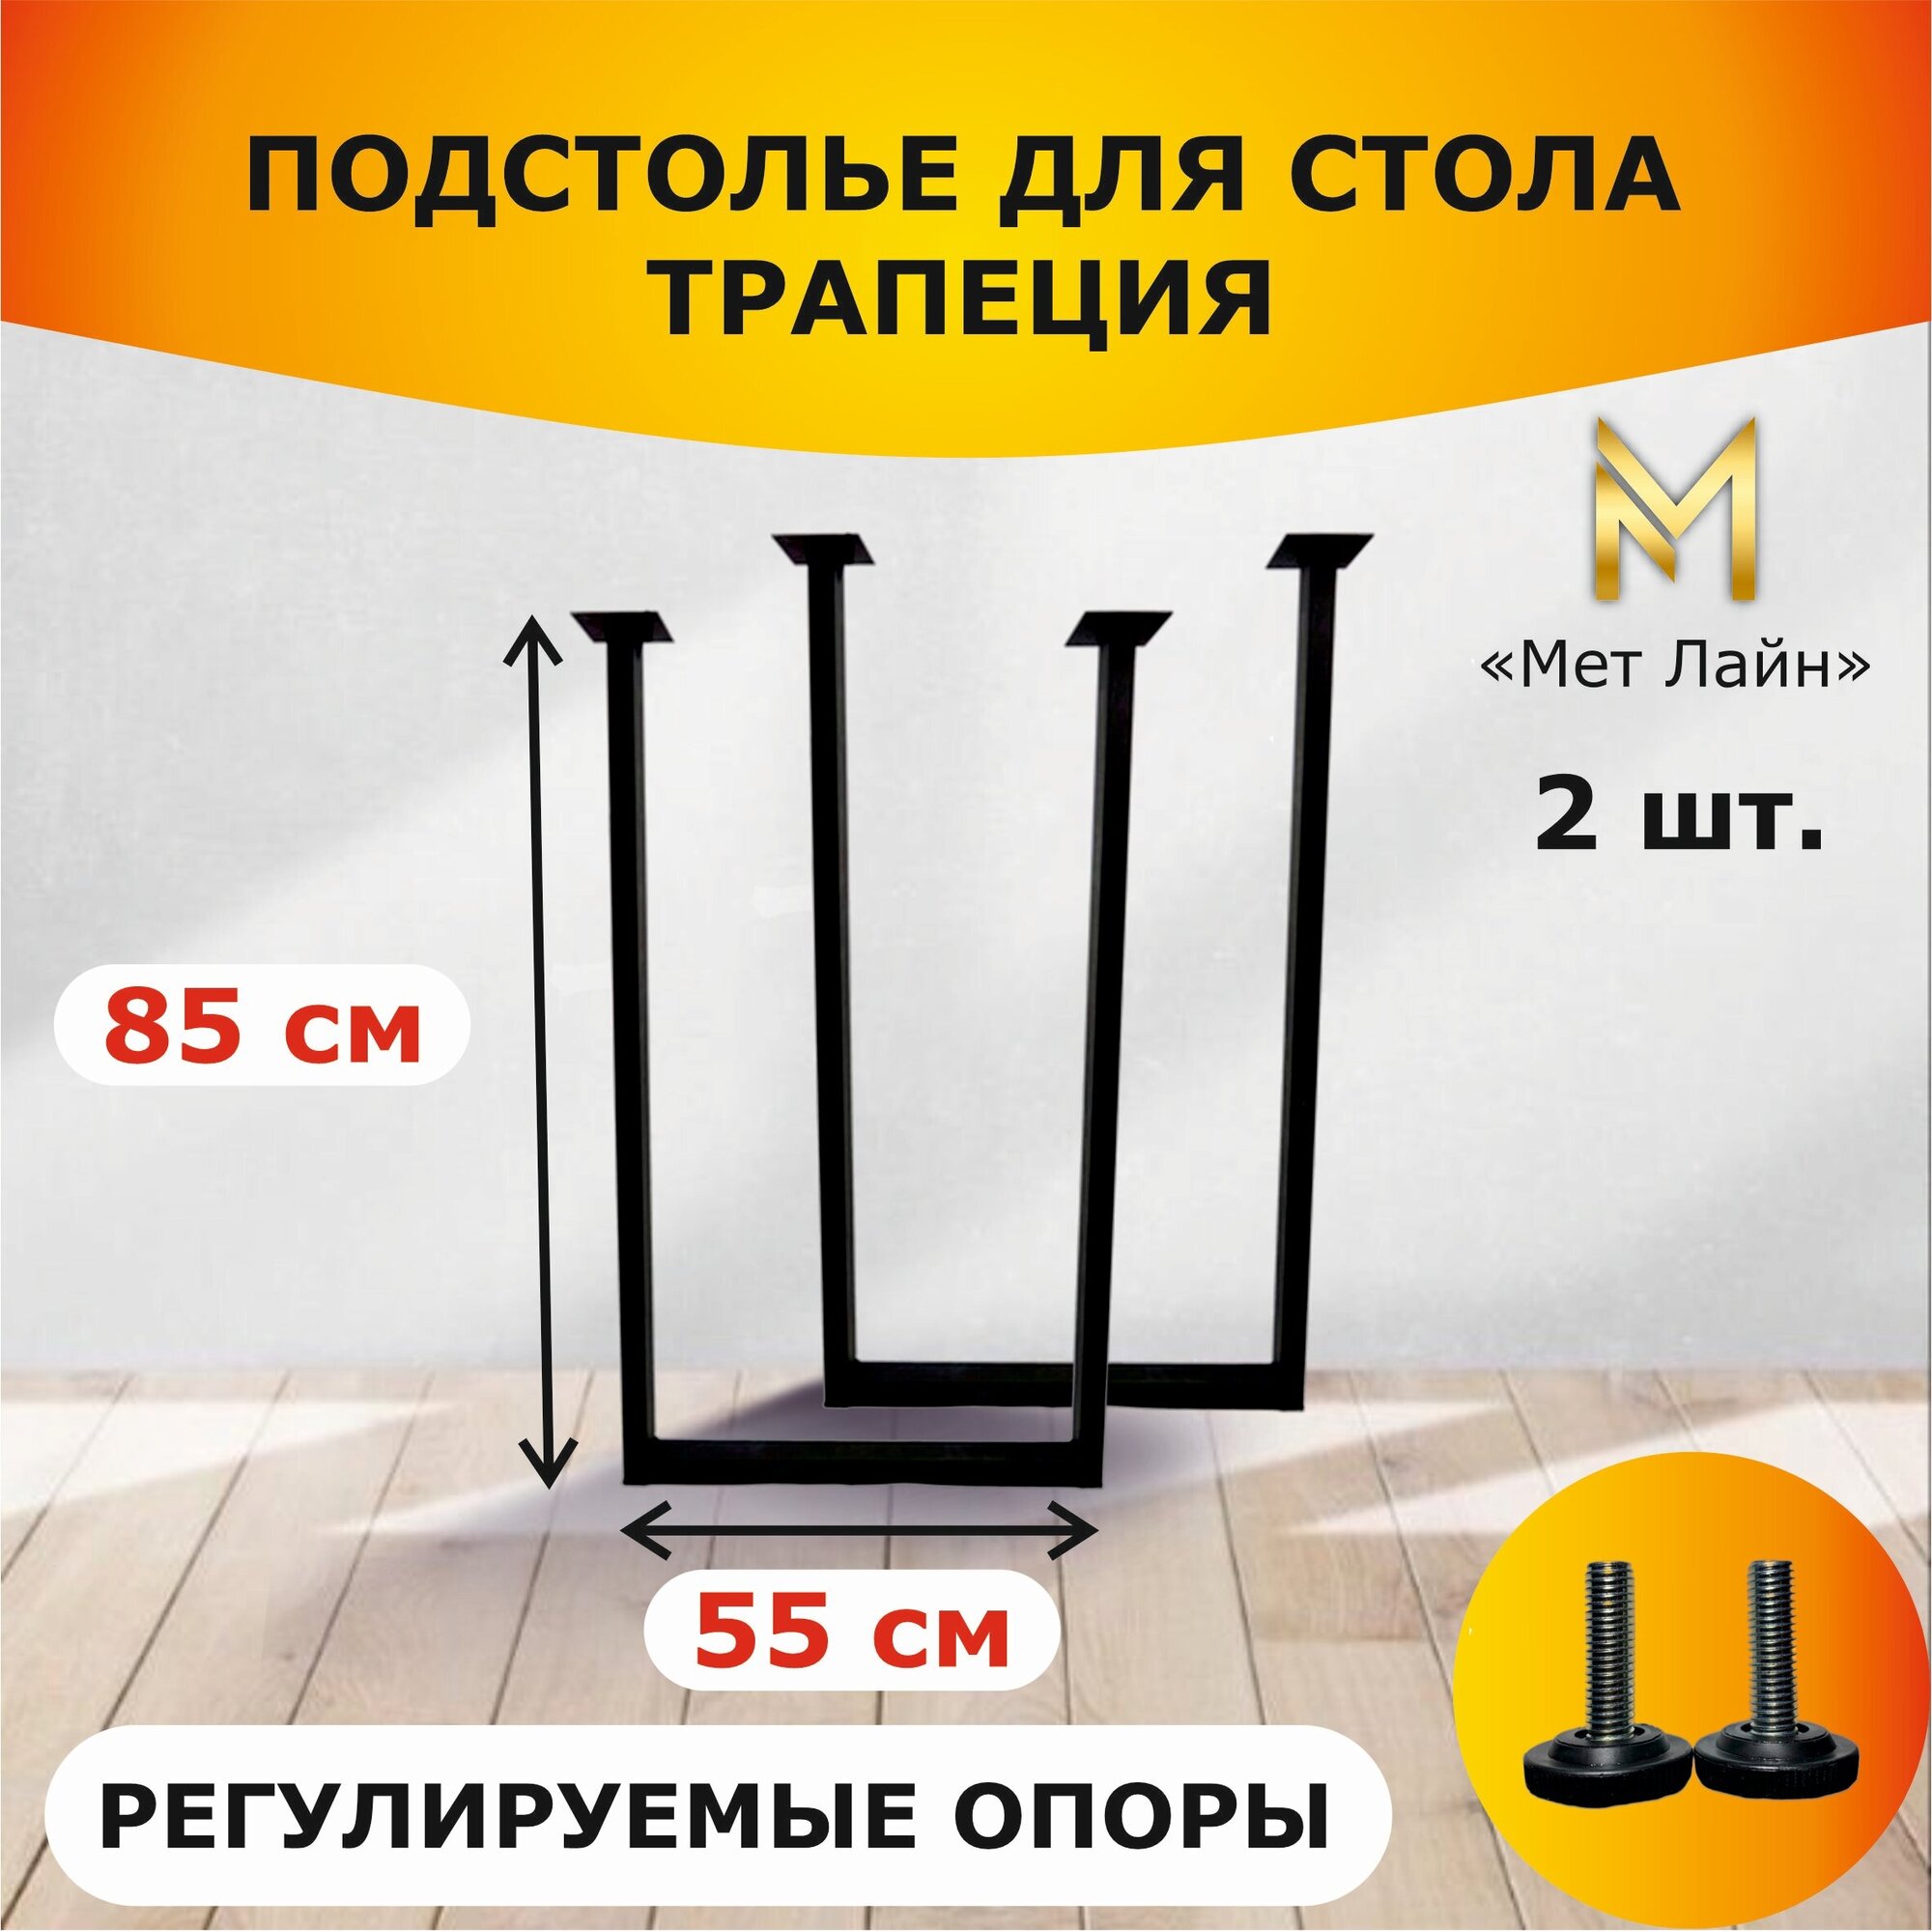 Подстолье для стола лофт П образное металлическое, квадратное, 85 см * 55 см, чёрное, комплект 2 штуки, ножки для стола лофт